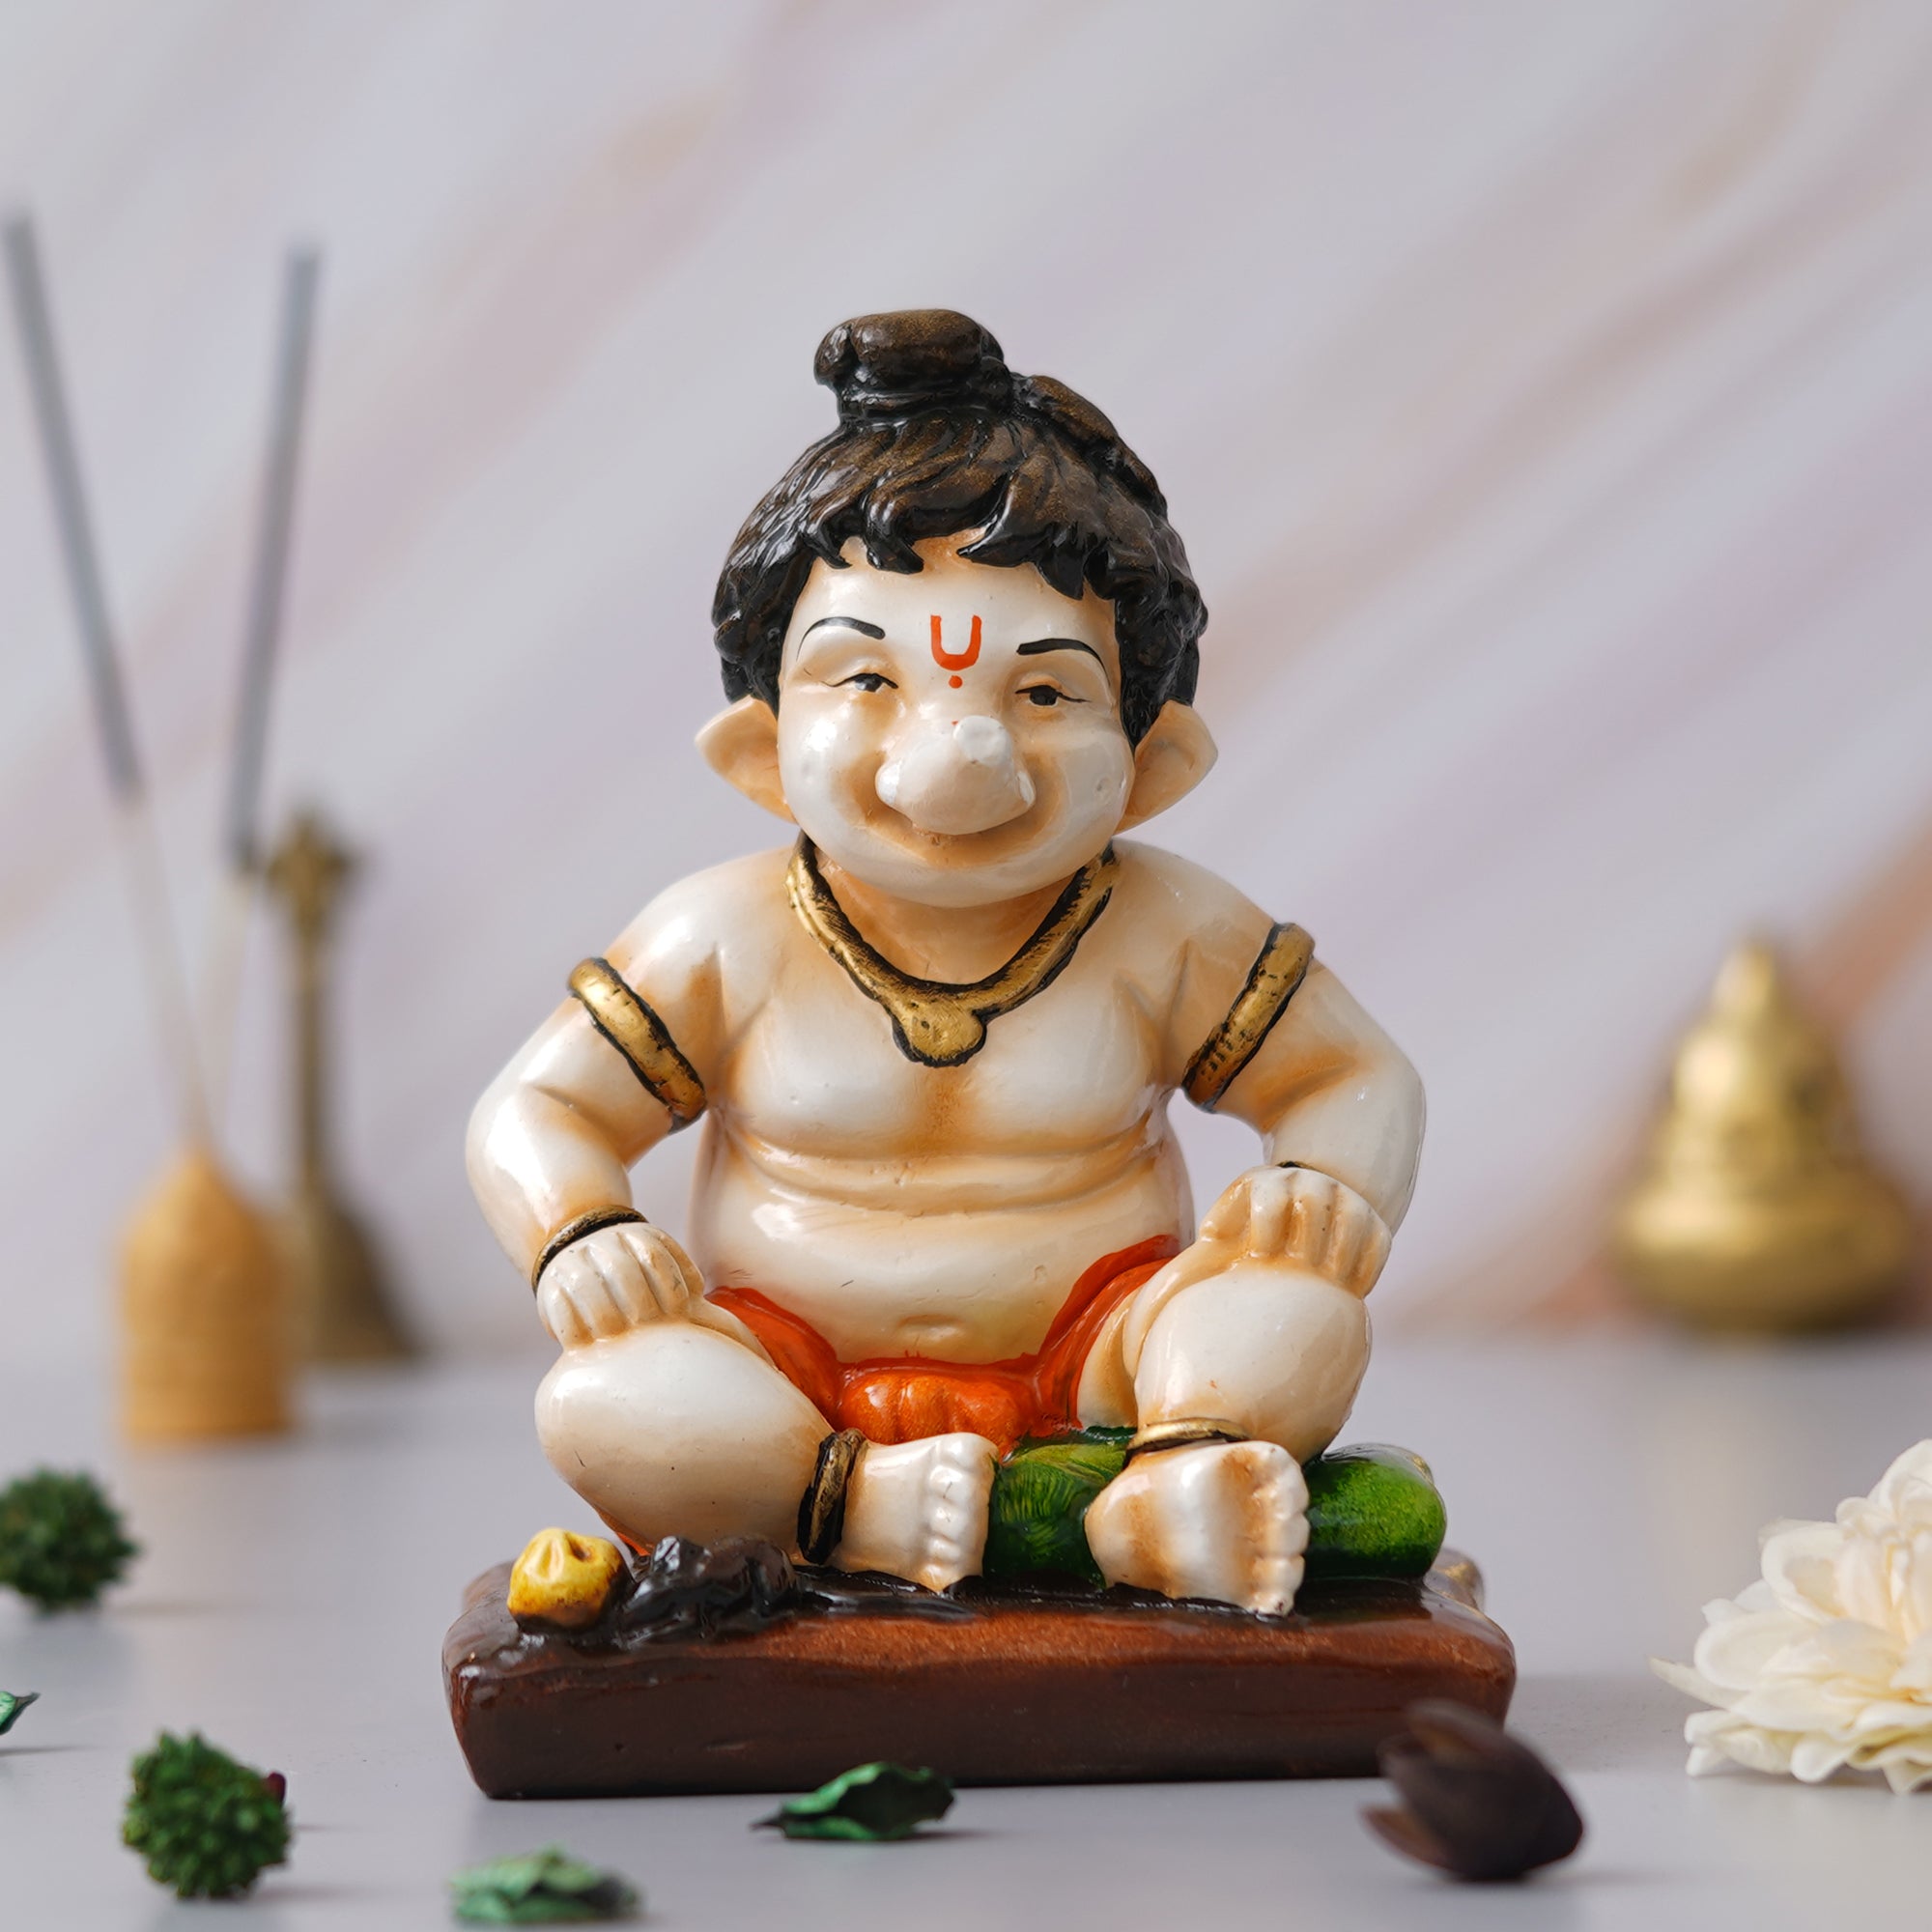 eCraftIndia Multicolor Polyresin Handcrafted Sitting Lord Ganesha Idol 4